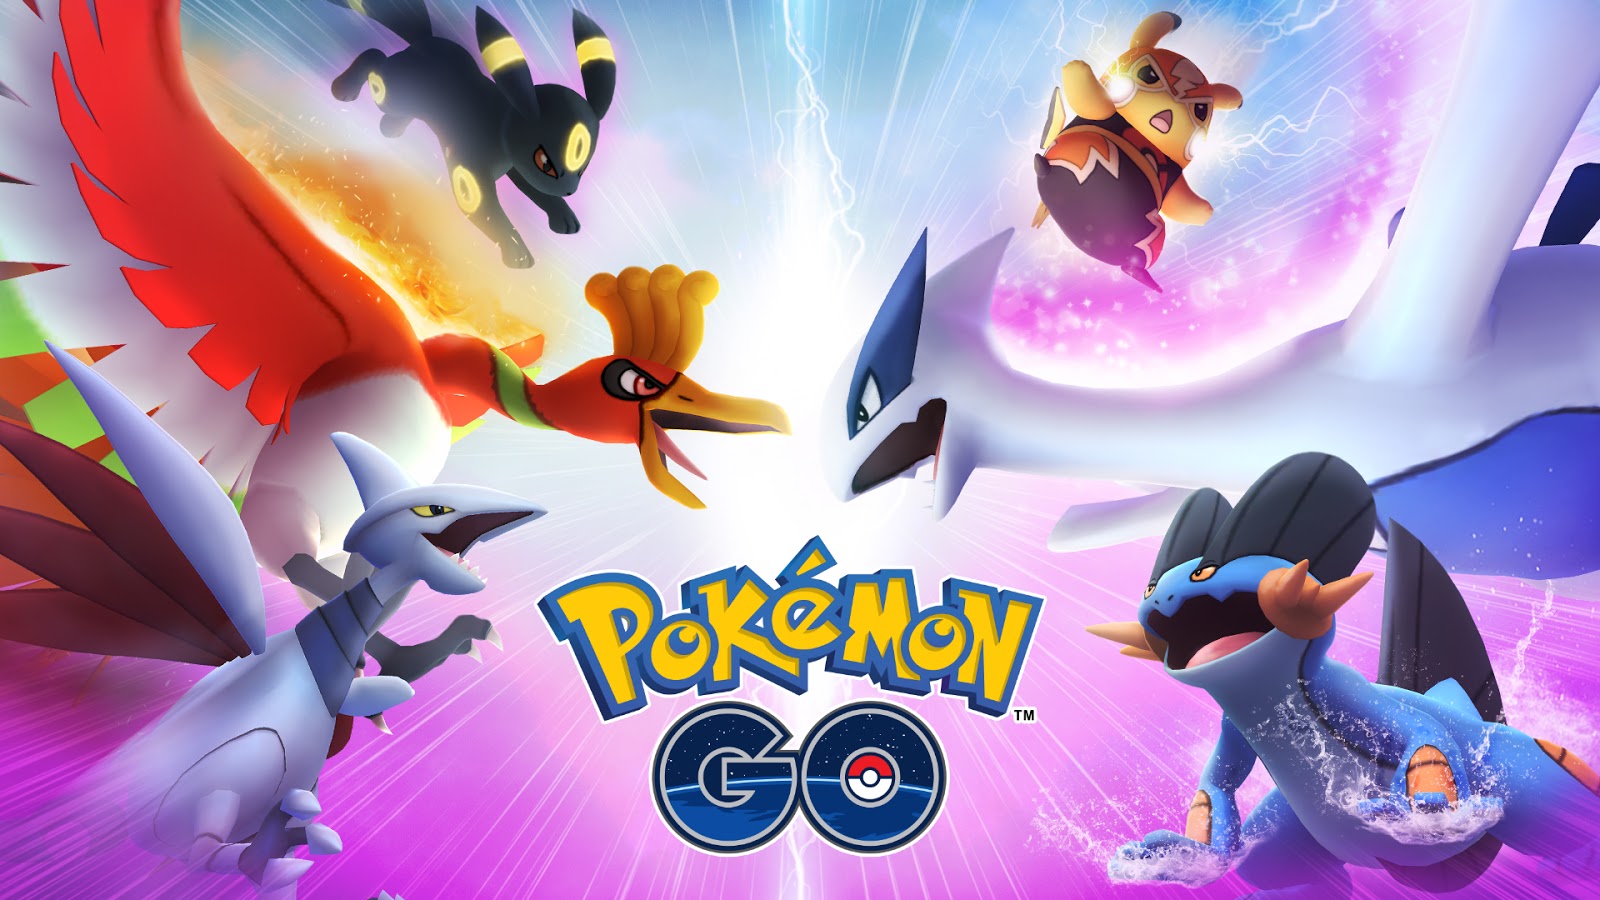 Fraquezas Pokémon GO: vantagens de cada tipo